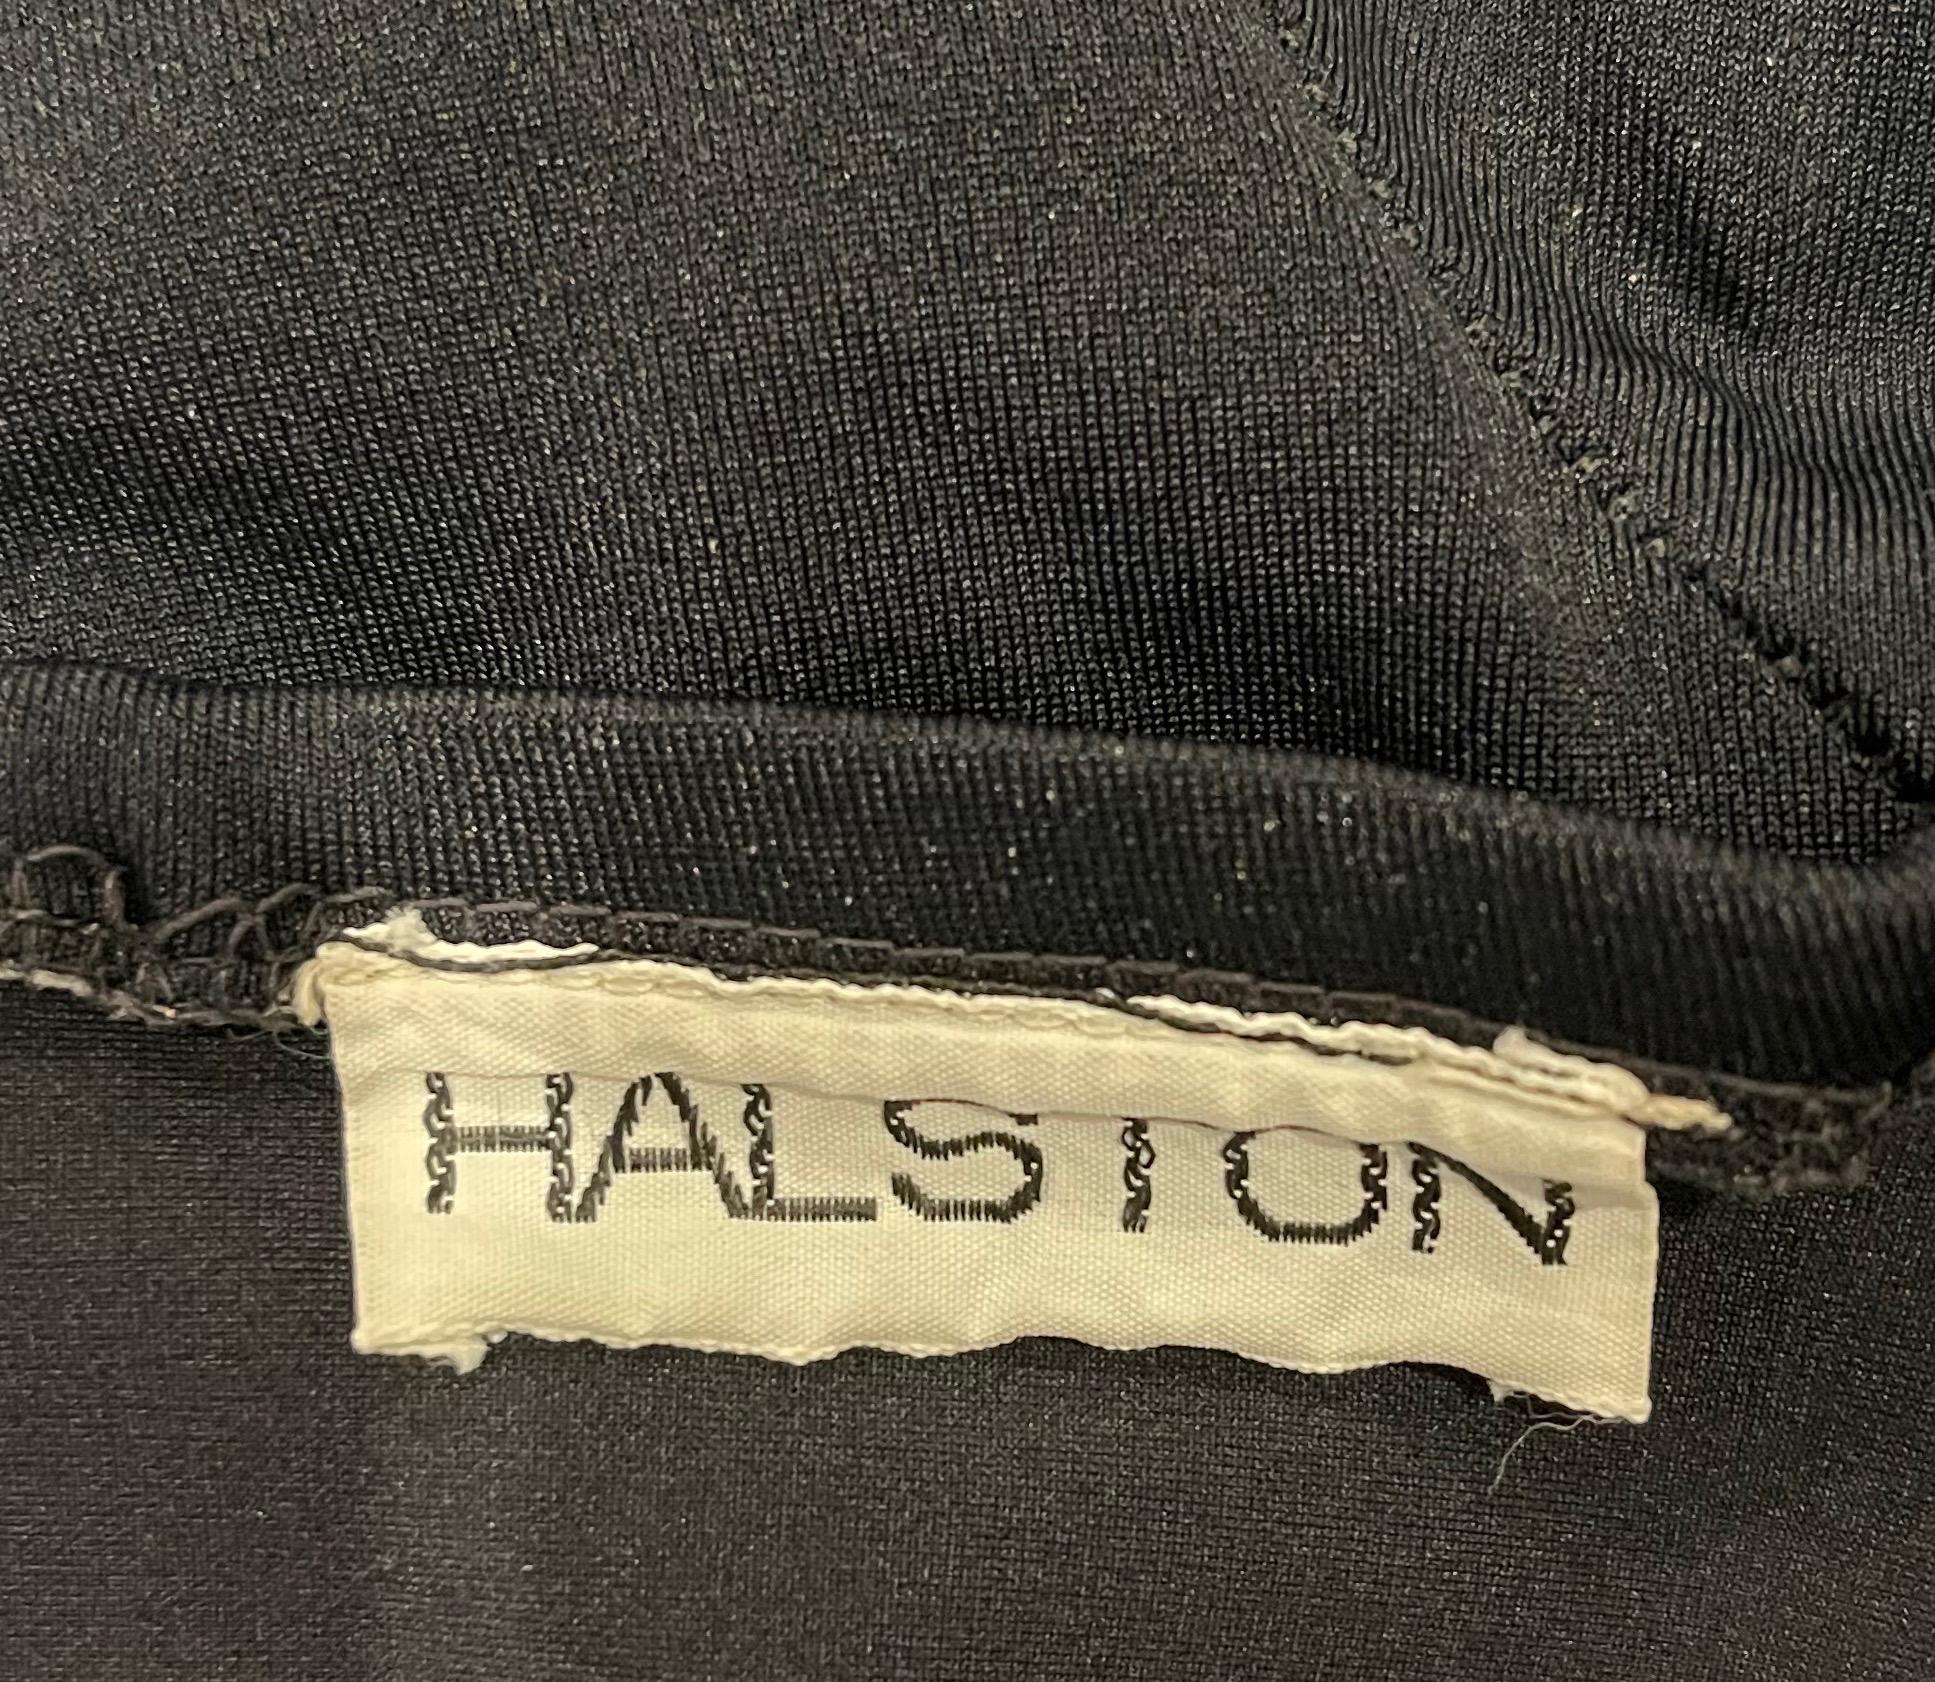 Pièce de musée rare ! Ce maillot de bain une pièce noir sans bretelles HALSTON des années 70 provient d'un modèle original Halstonette qui l'a porté pour une séance photo dans les années 70. Couture complexe qui flatte le corps. Trou de serrure au